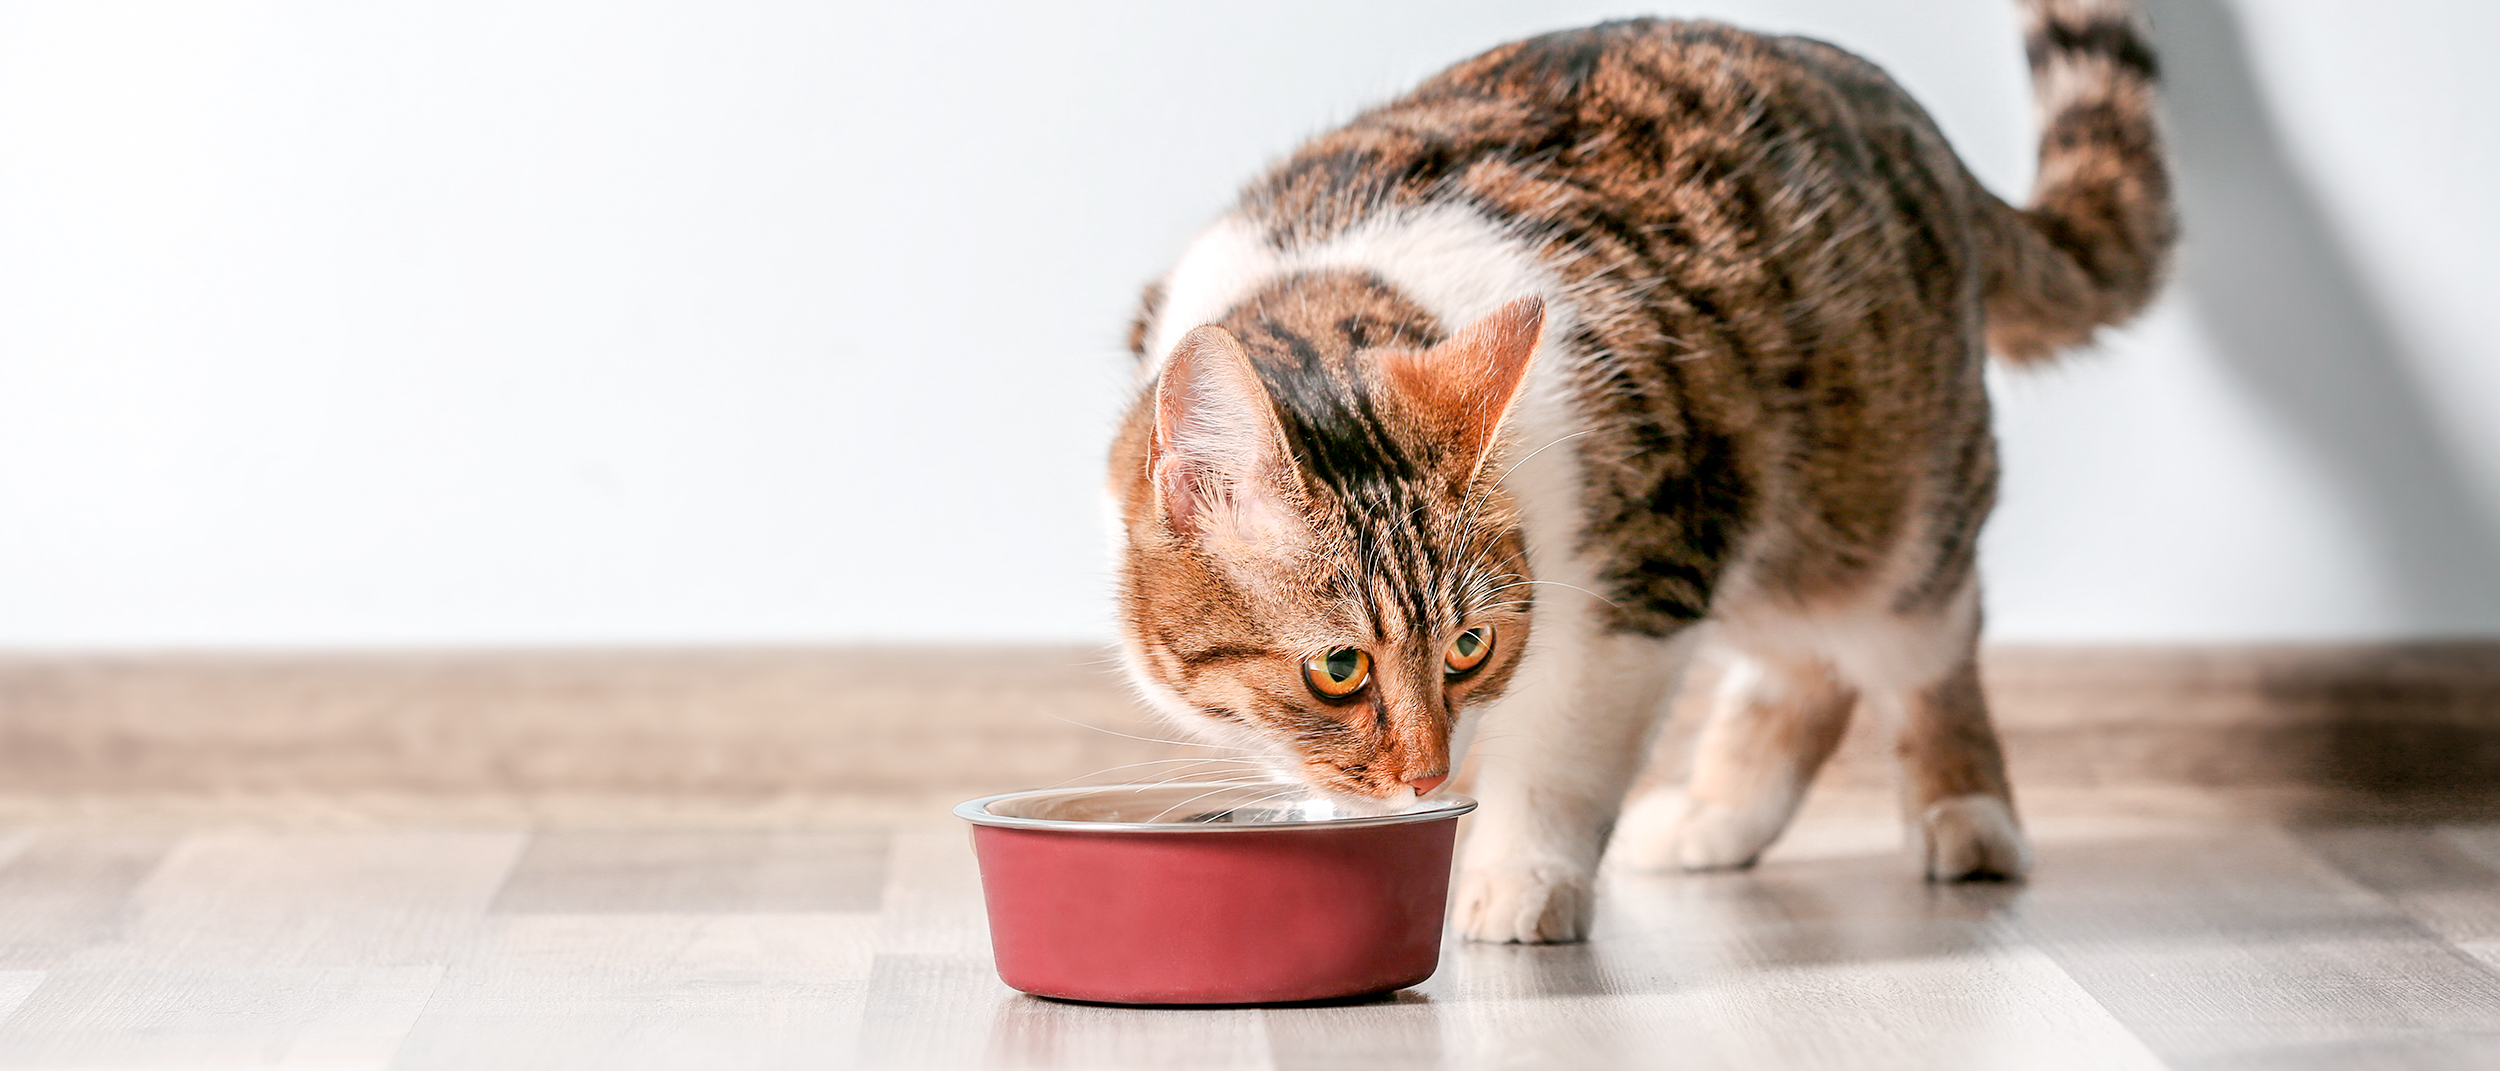 Gato de edad avanzada parado en ambiente cerrado comiendo de un plato rojo.